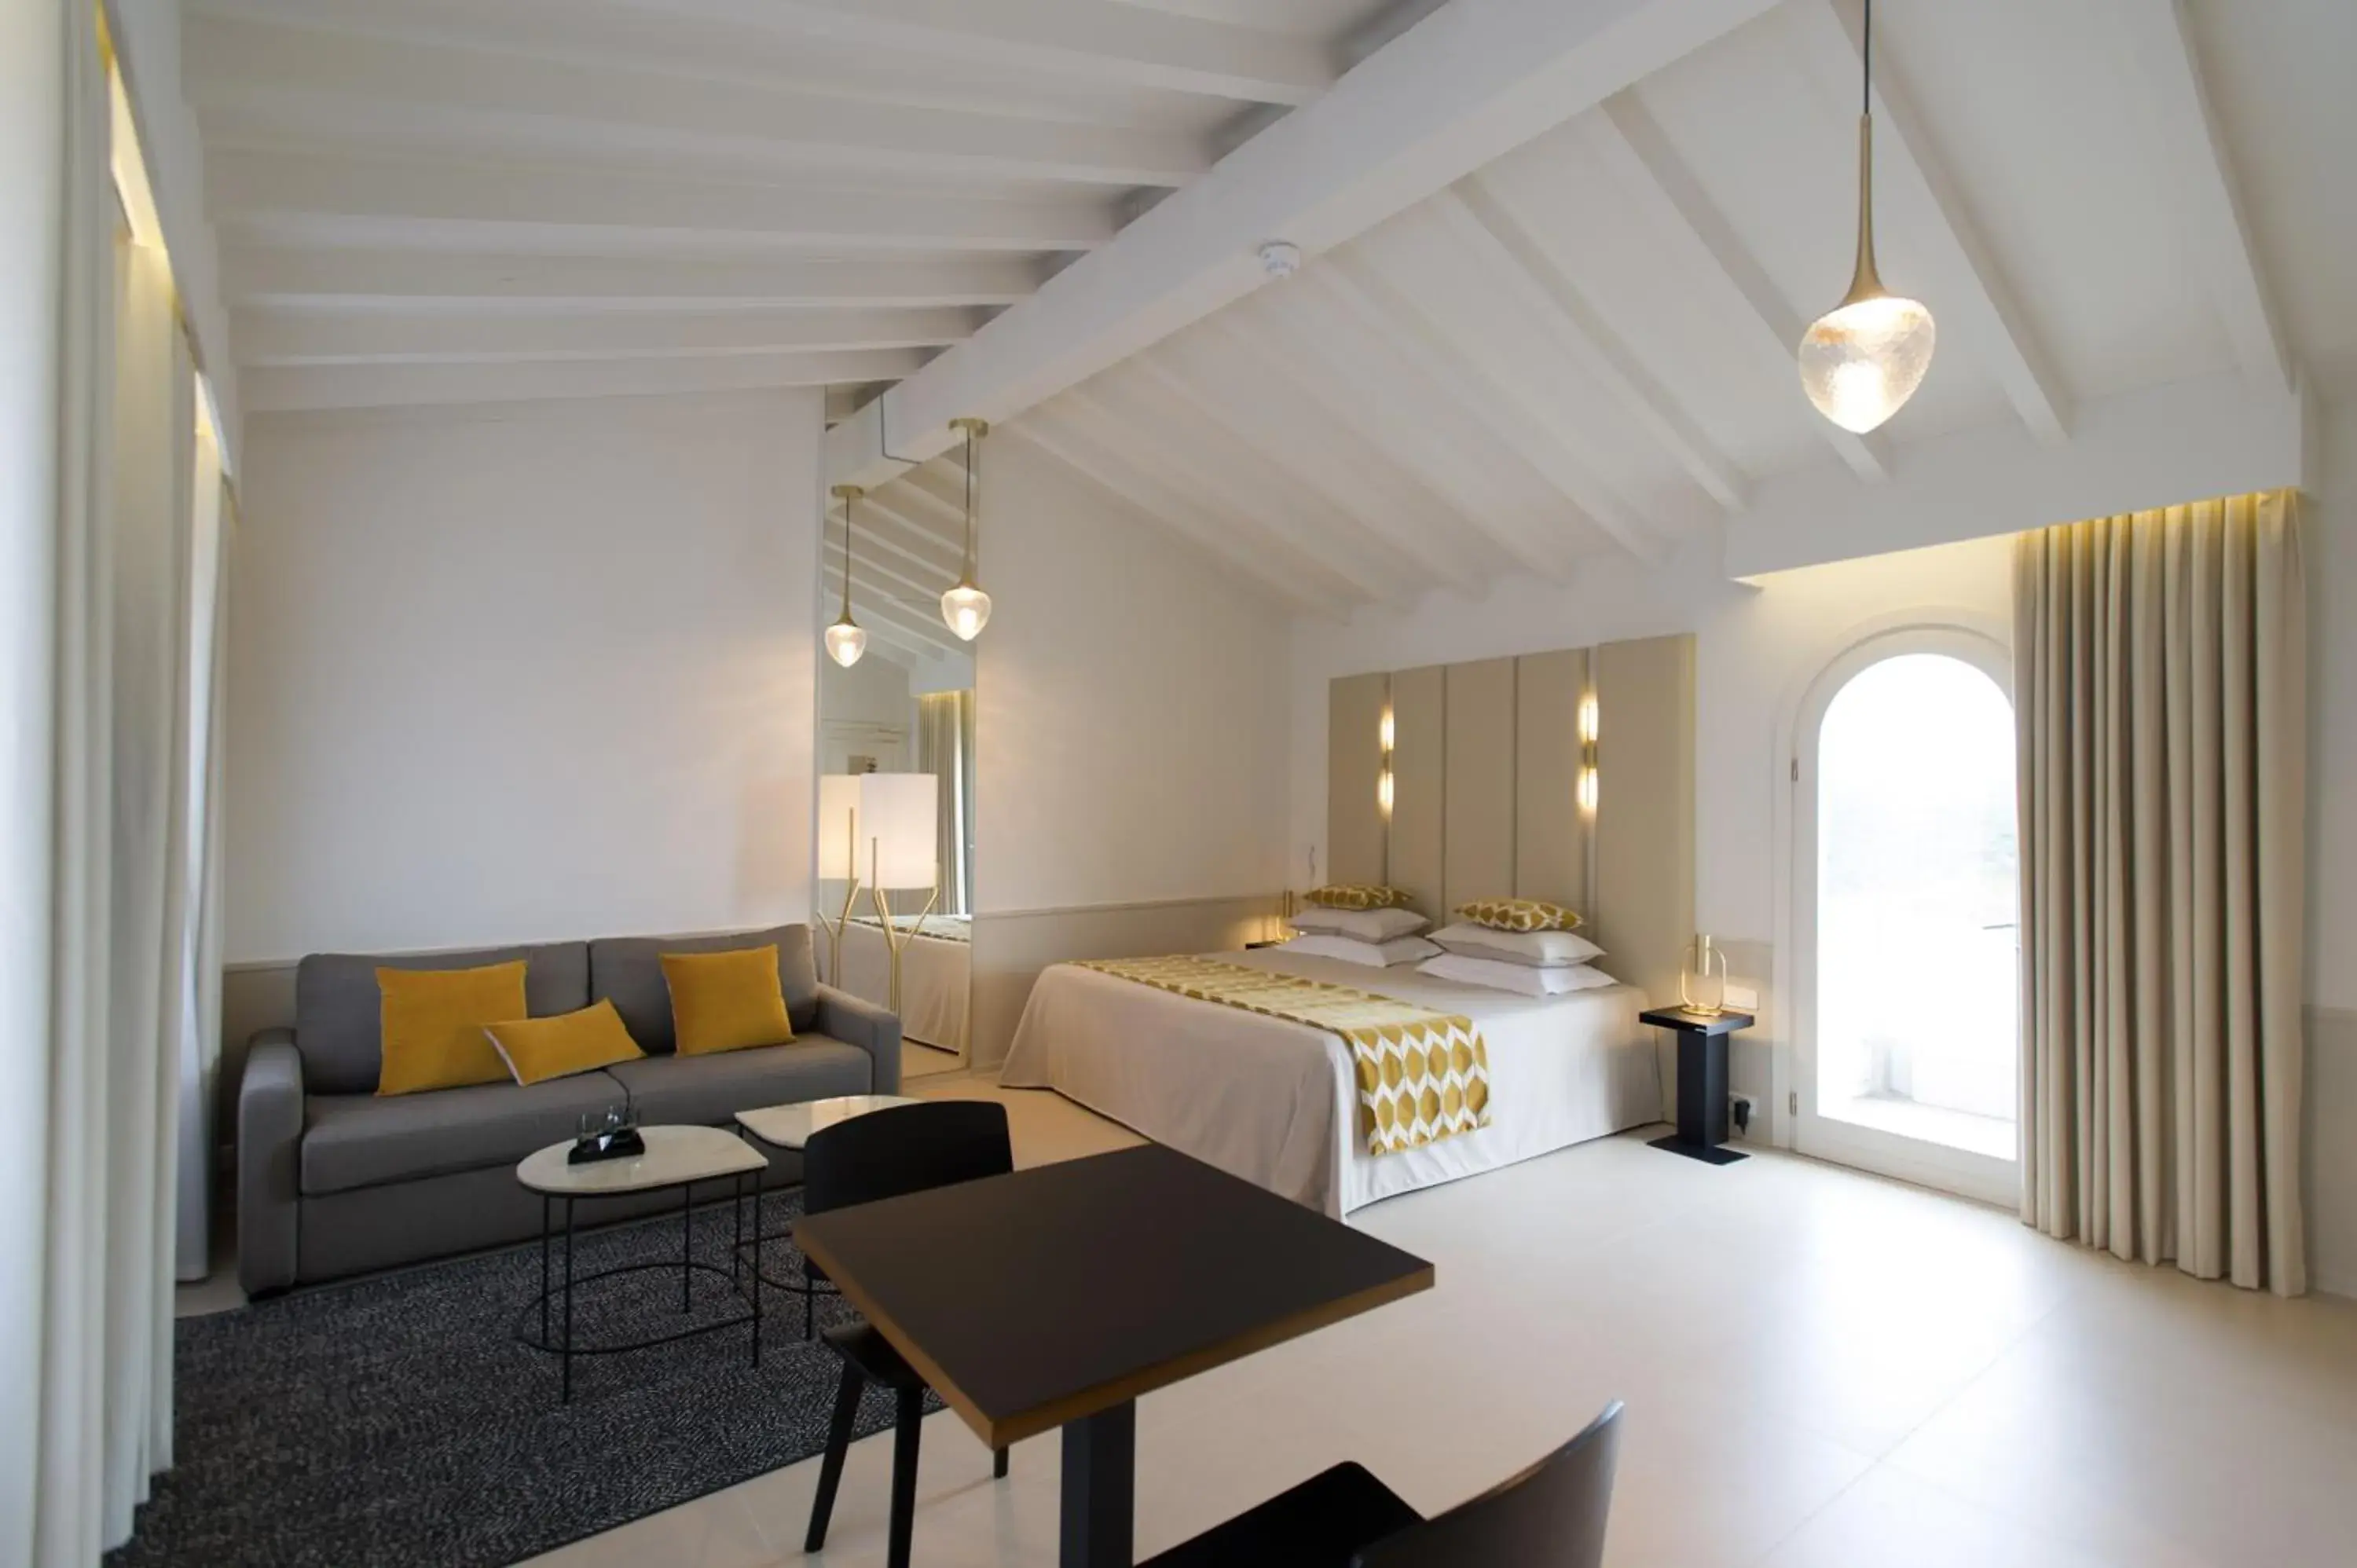 Living room in Hotel Spa Genovese